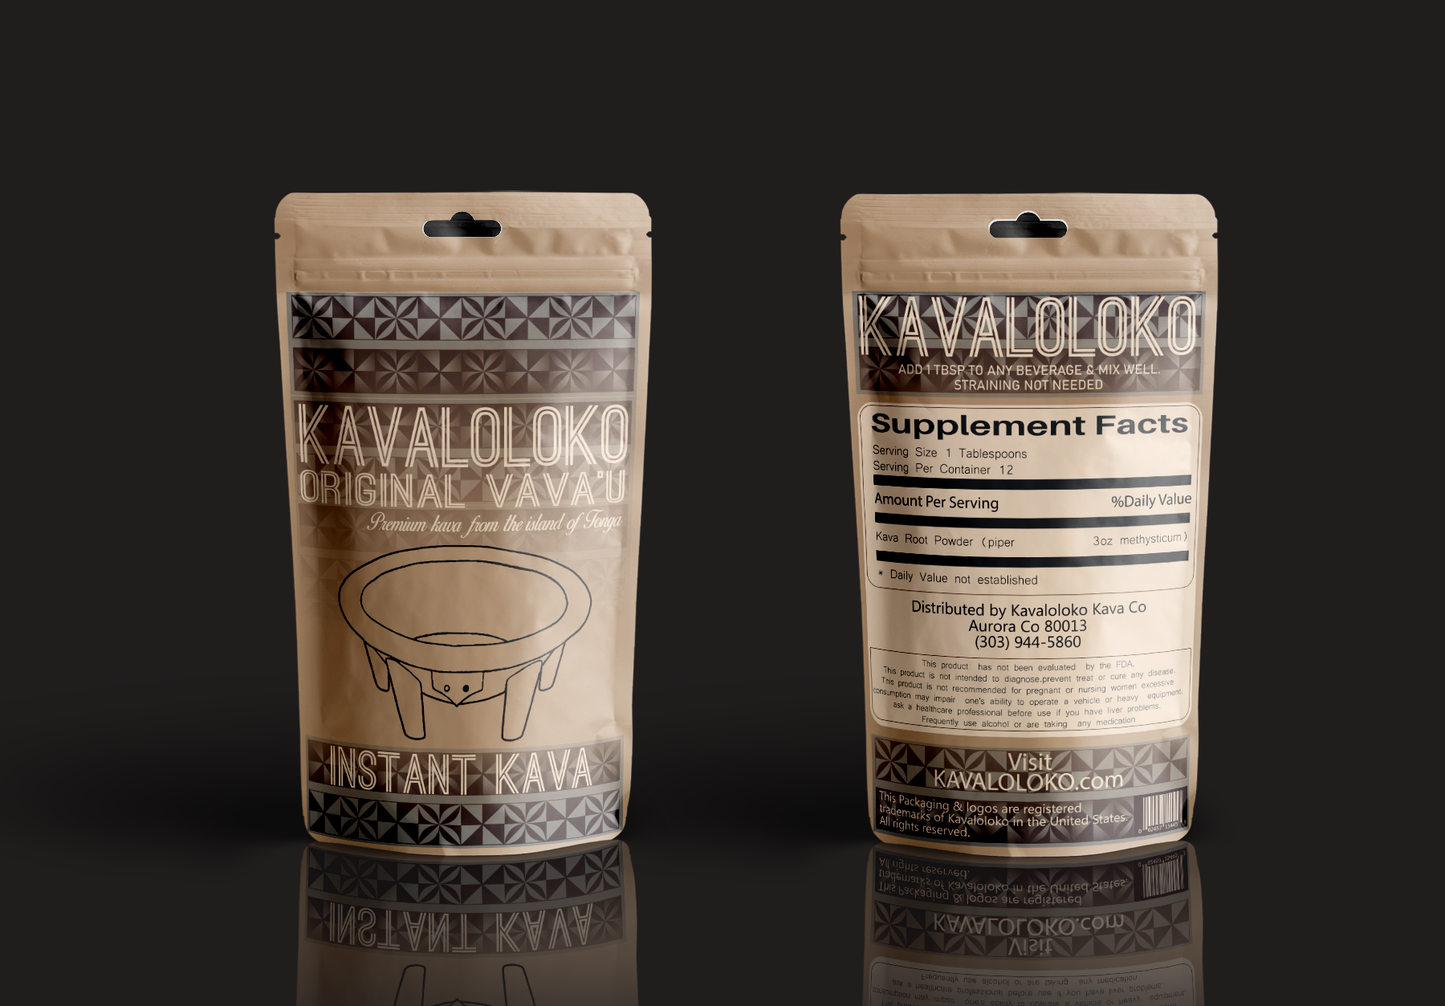 Original Vava'u - Micronized Kava (3oz)